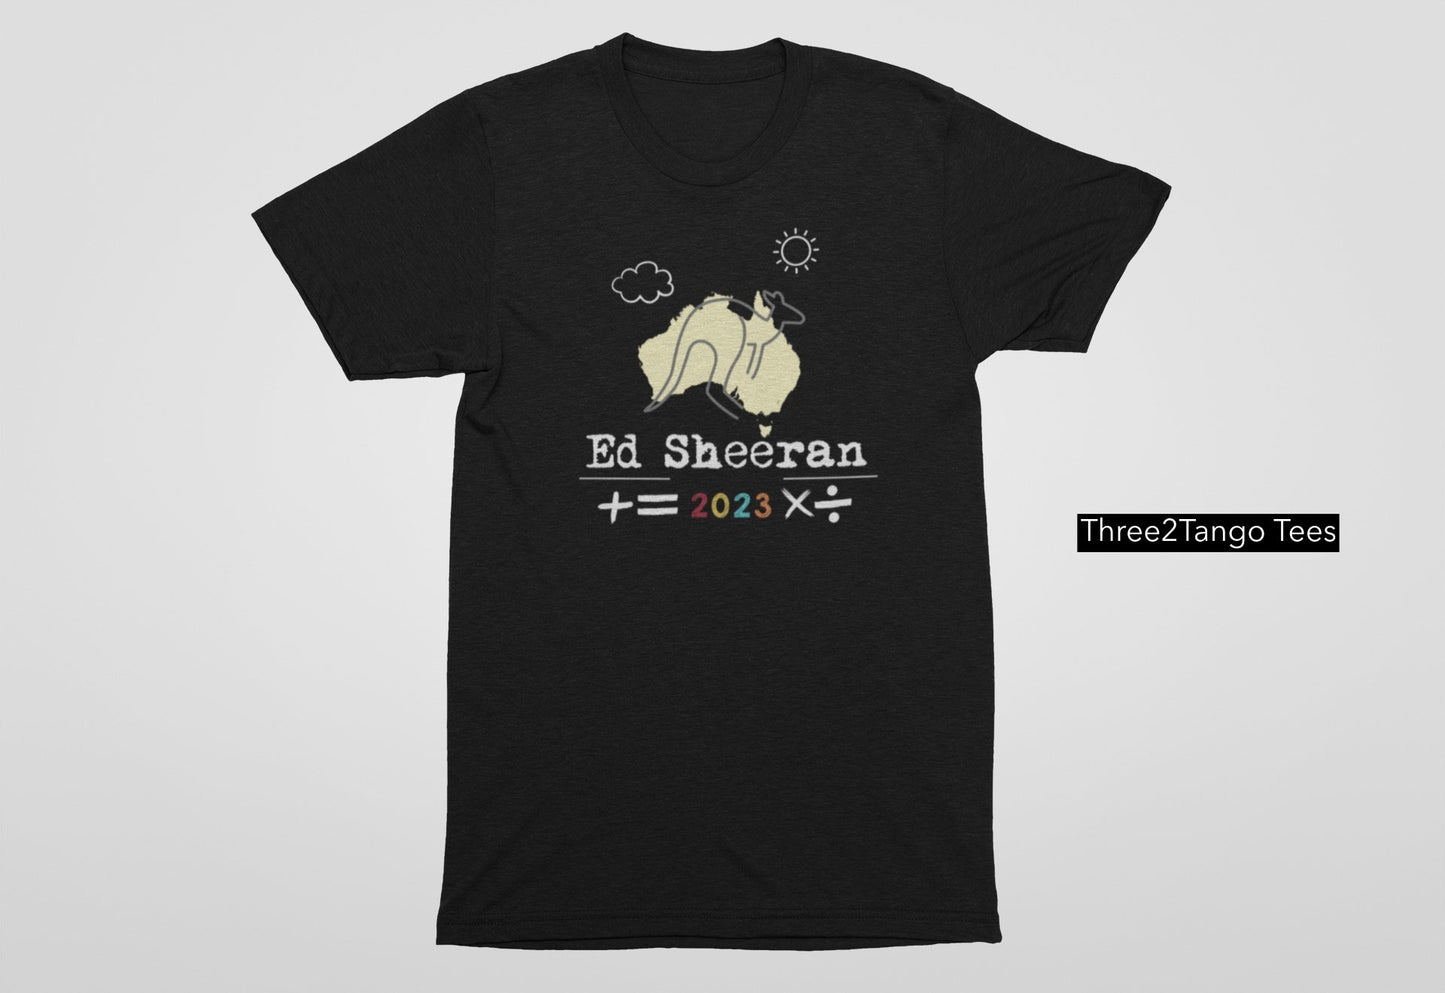 Ed Sheeran Mathematics Tour 2023 T-shirt, Kangaroo - Three2Tango Tee's